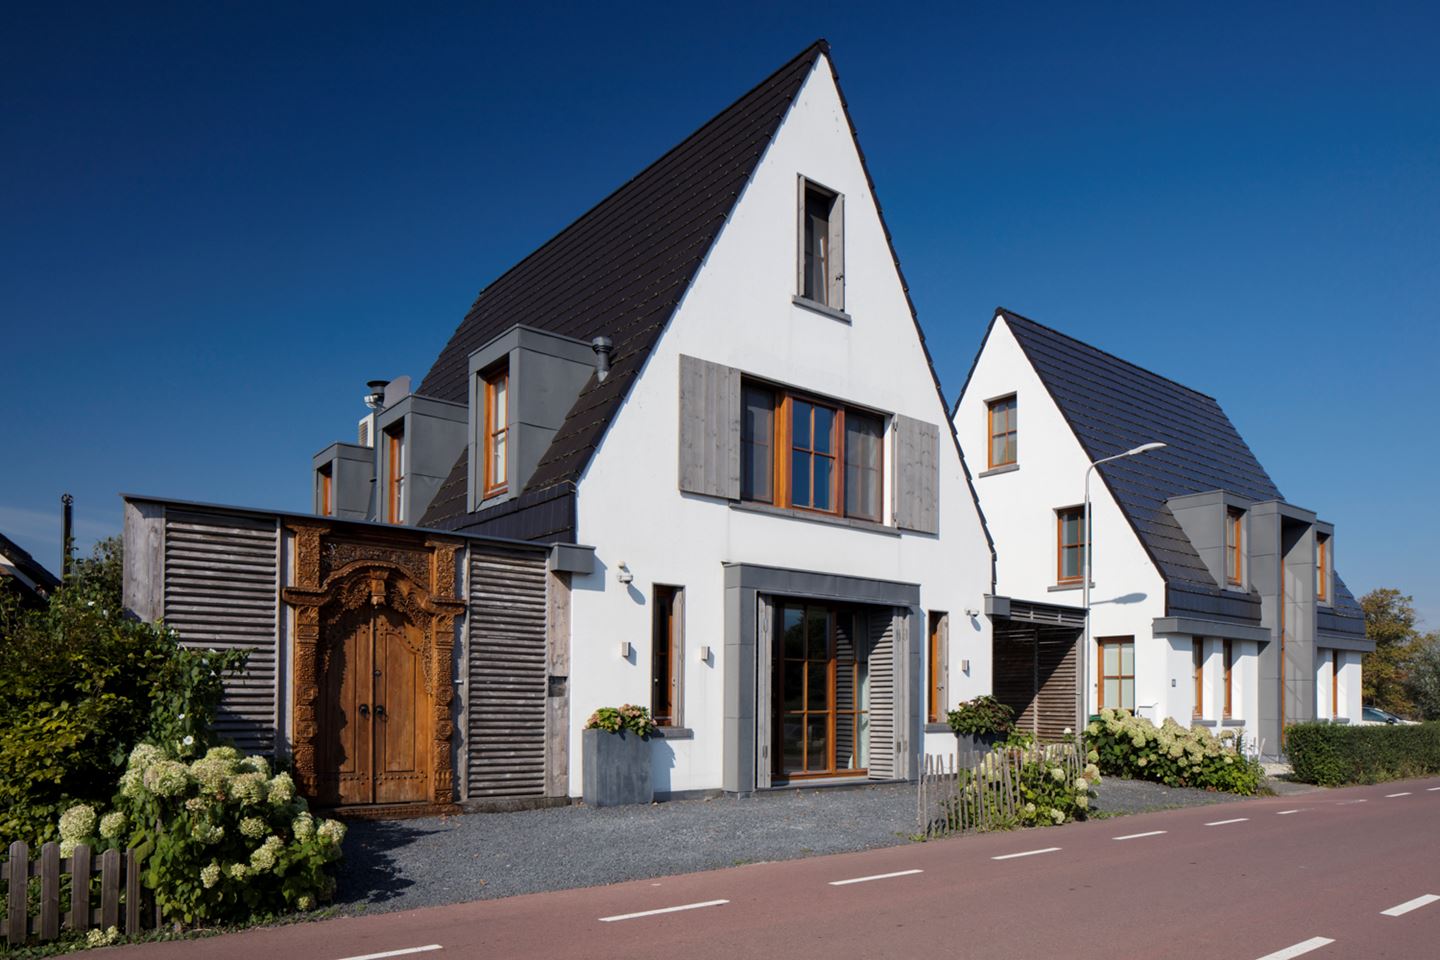 Голландская дом 3. Домик в голландском стиле. Фасад в голландском стиле. Фасад дома в голландском стиле. Голландский стиль в архитектуре.